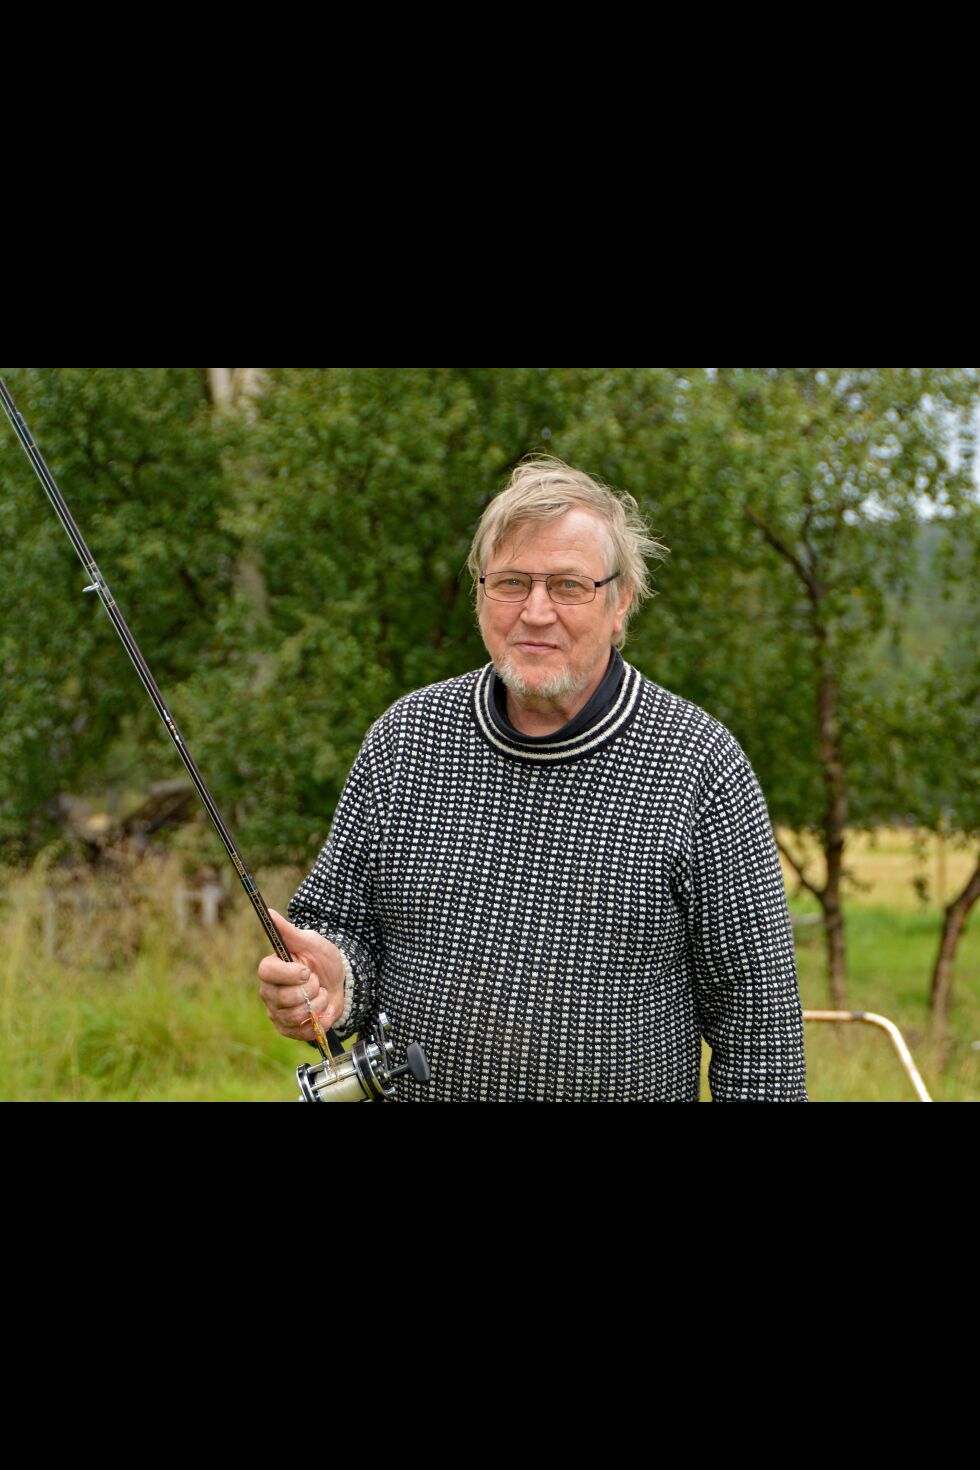 I 50 år har finske Keijo Tattari kommet til Porsanger for å fiske. Dette er hans fristed, og hit kommer han helst alene.
 Foto: Kristin Marie Ericsson